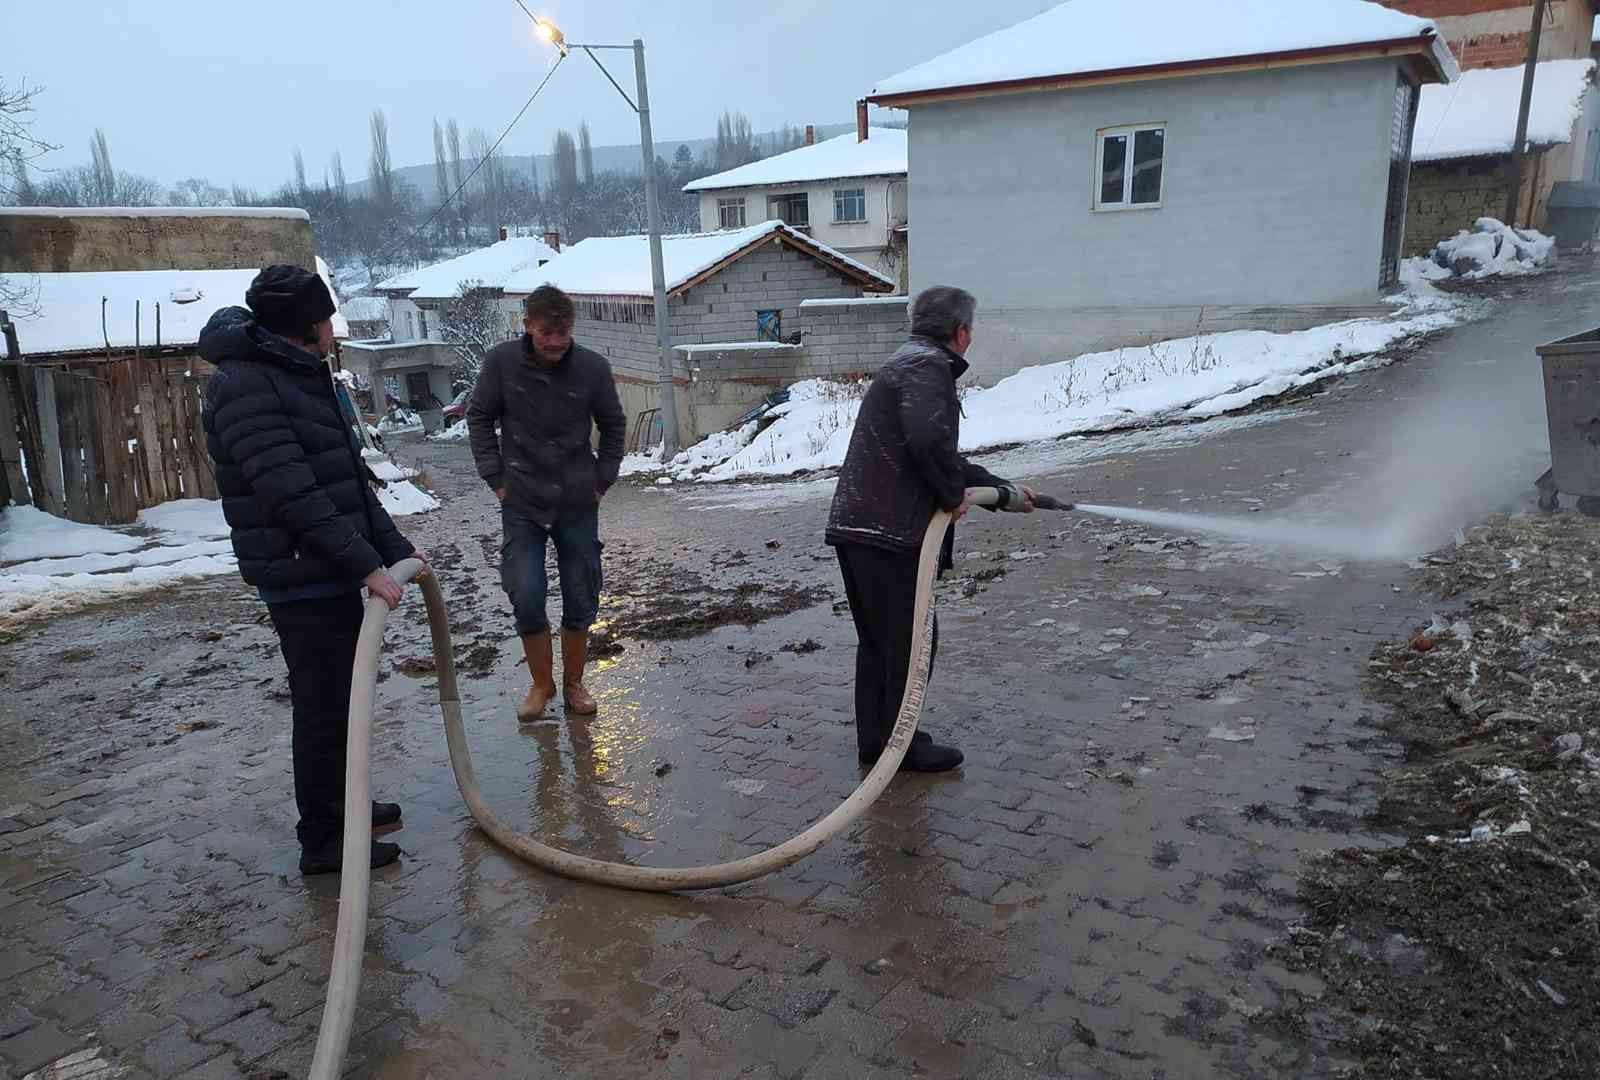 Köylüler yollardaki kar ve buzu kaplıca suyuyla eritiyorlar #kutahya